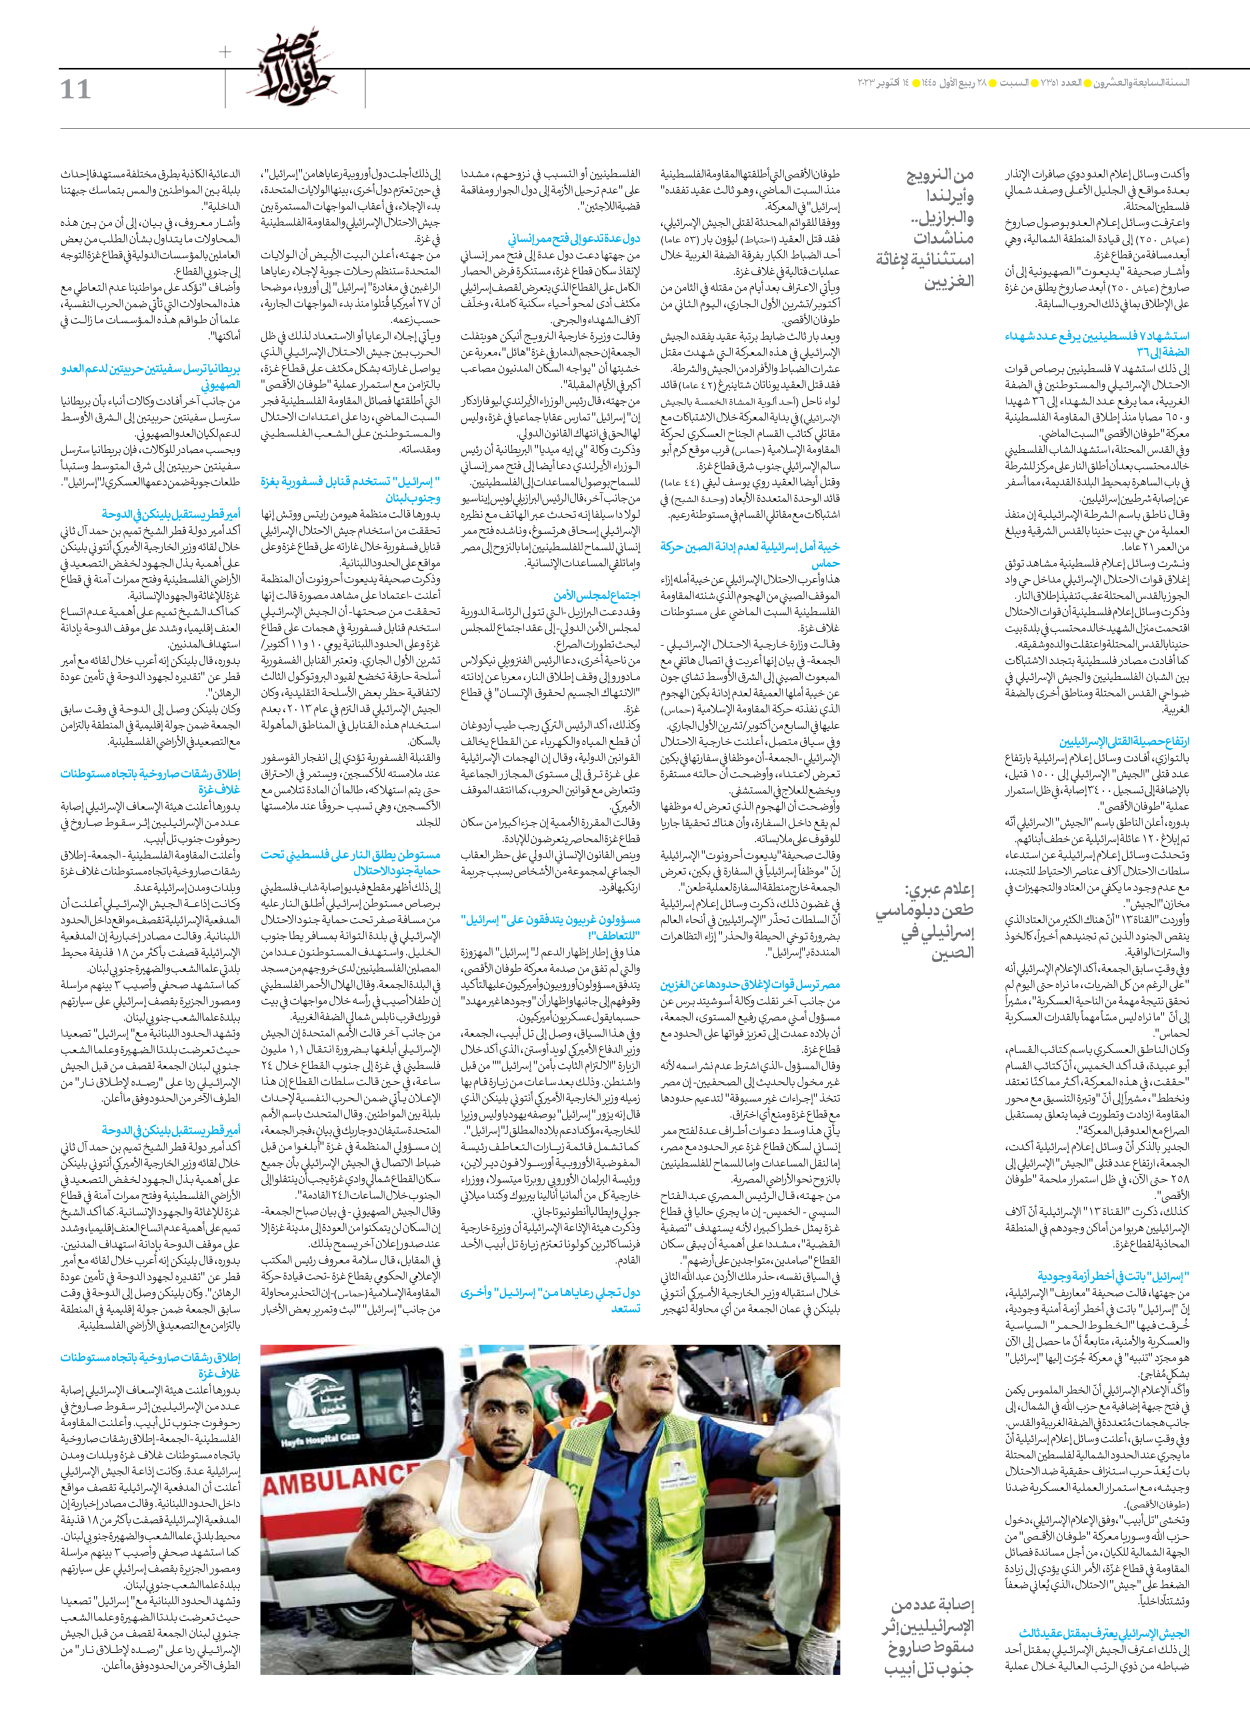 صحیفة ایران الدولیة الوفاق - العدد سبعة آلاف وثلاثمائة وواحد وخمسون - ١٤ أكتوبر ٢٠٢٣ - الصفحة ۱۱